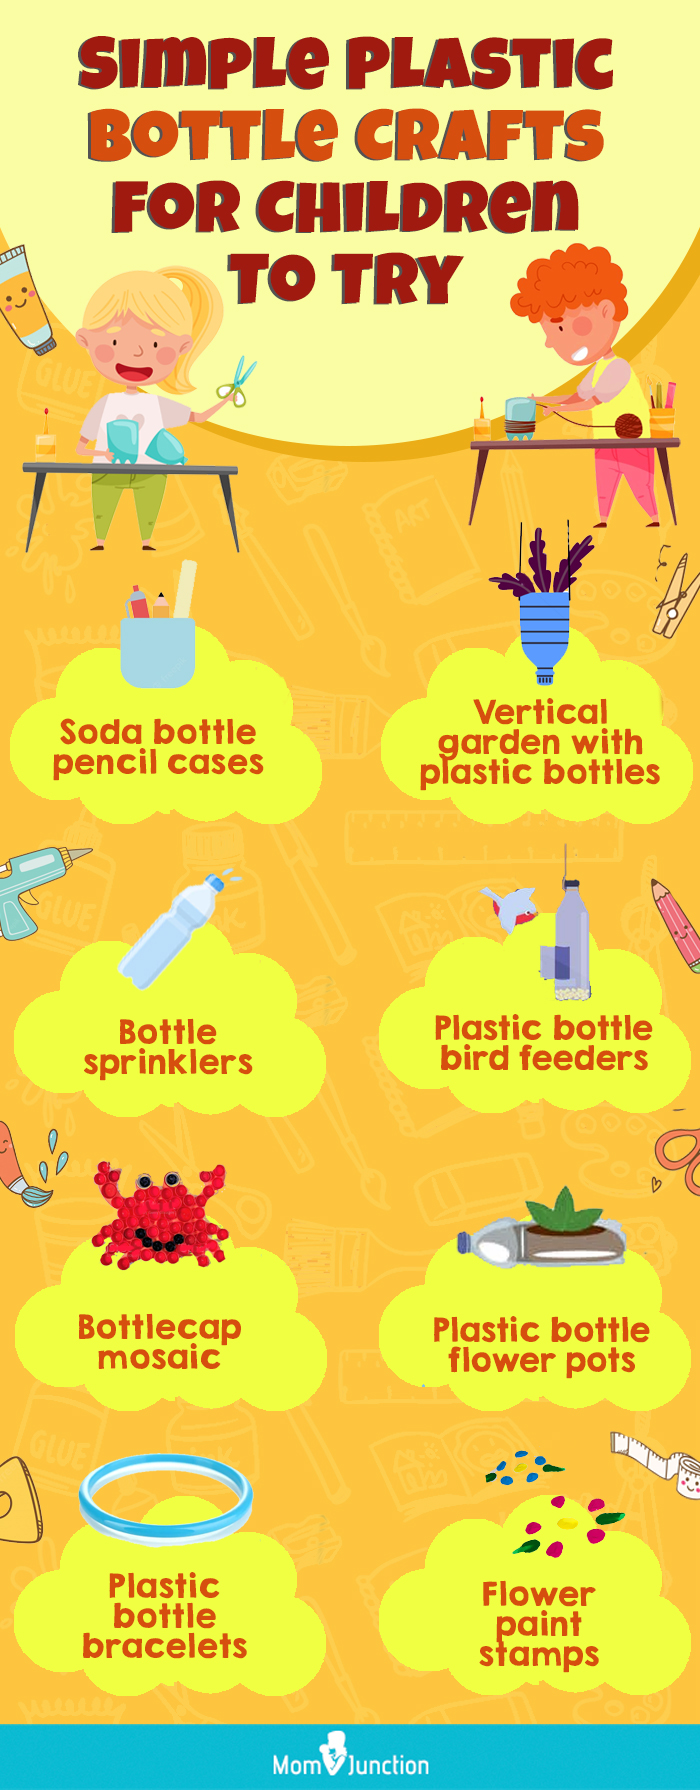 简单的塑料瓶工艺供孩子们尝试(信息图)